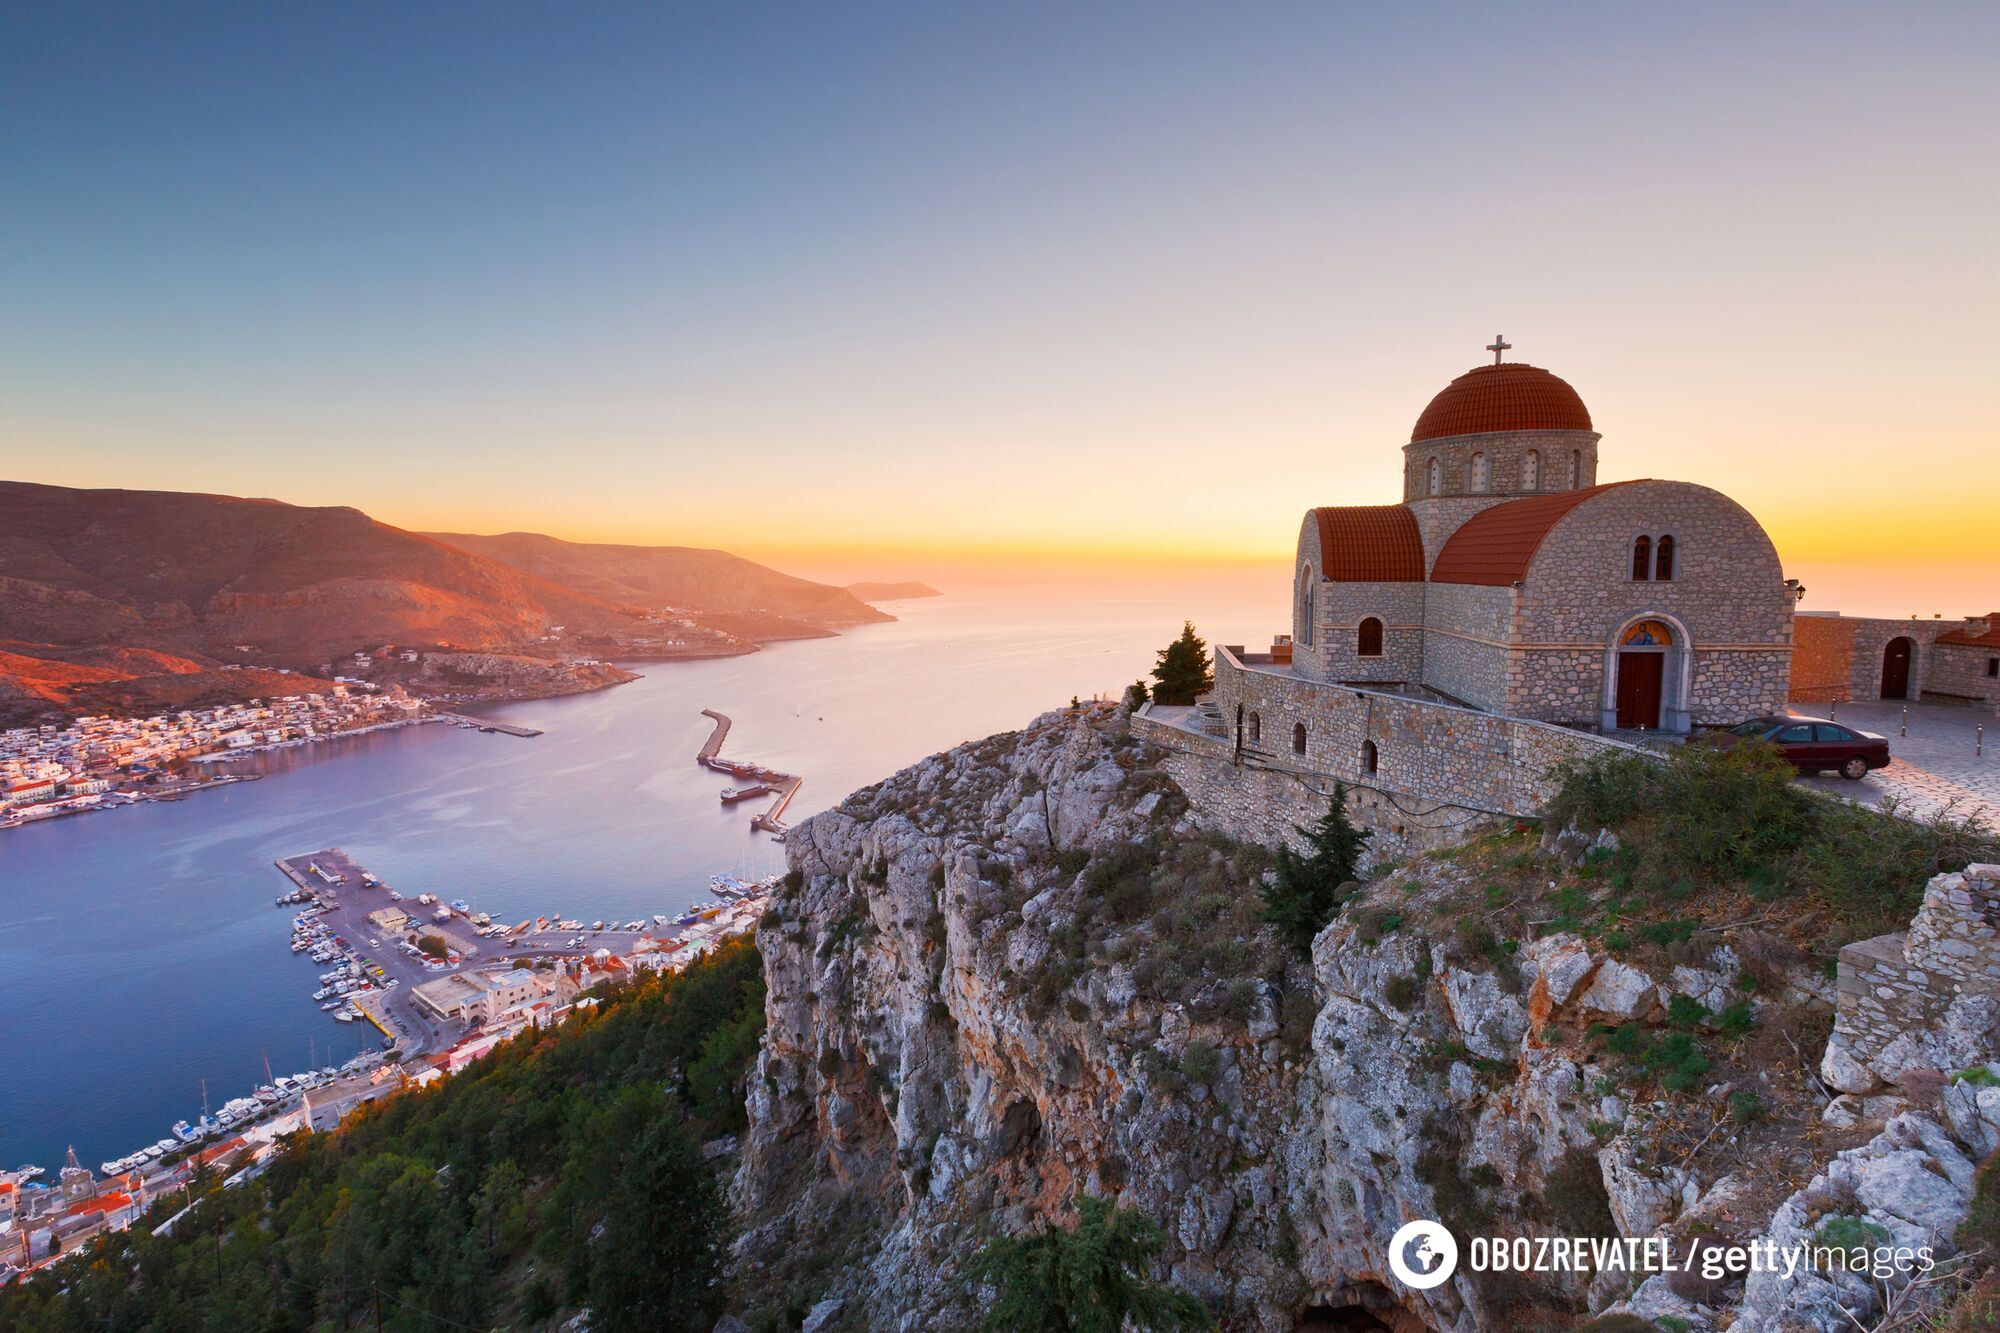 Z Grecji do Hiszpanii: najtańsze destynacje turystyczne all inclusive w Europie zostały nazwane